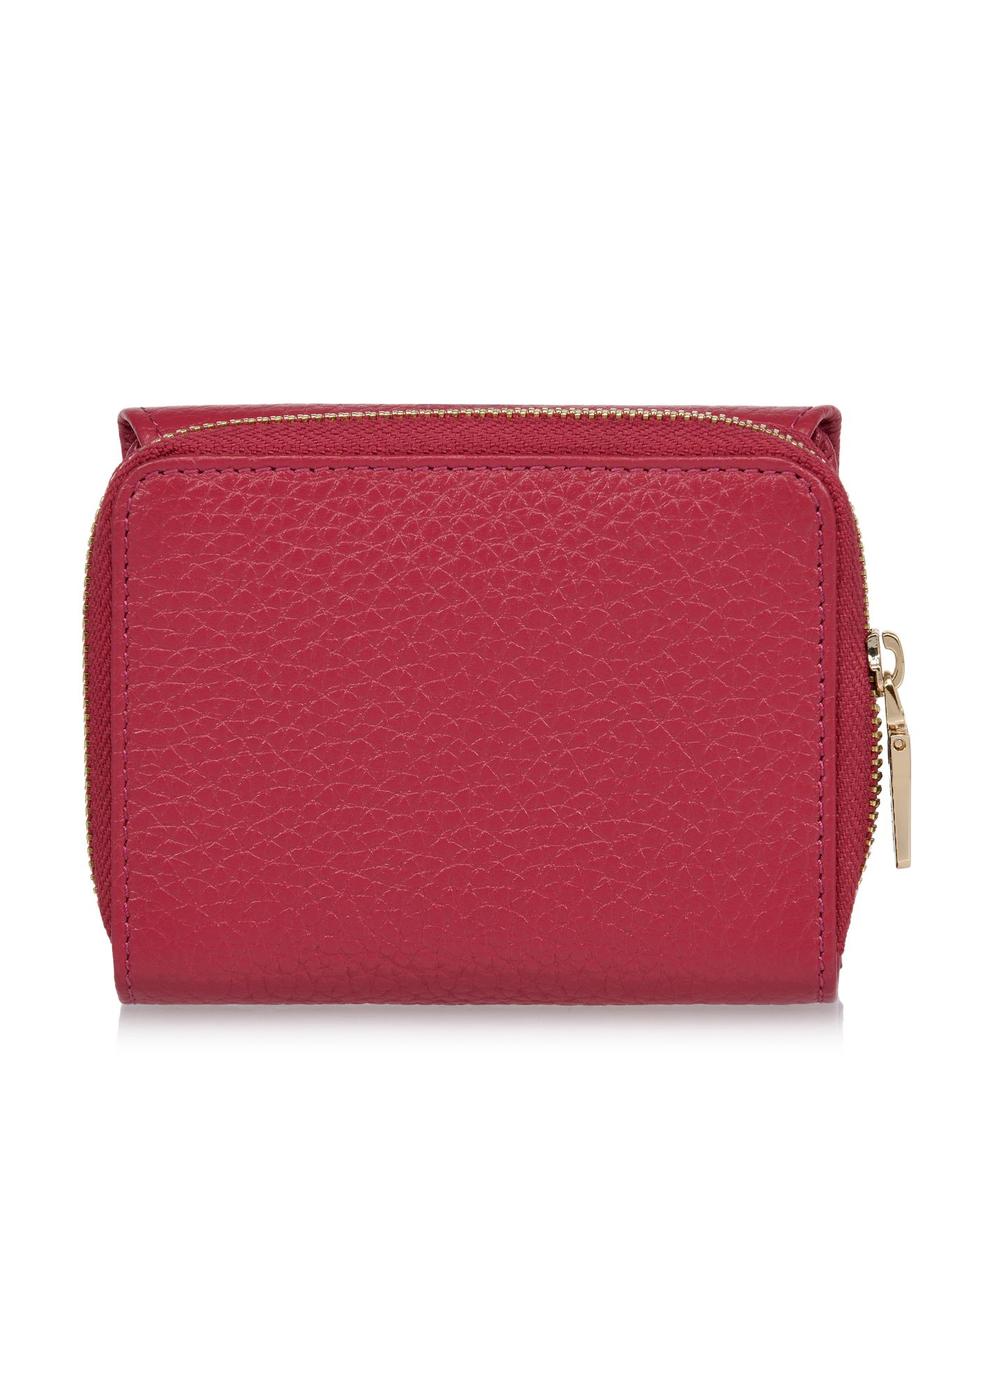 Różowy skórzany portfel damski z ochroną RFID PORES-0817RFID-34(W24)